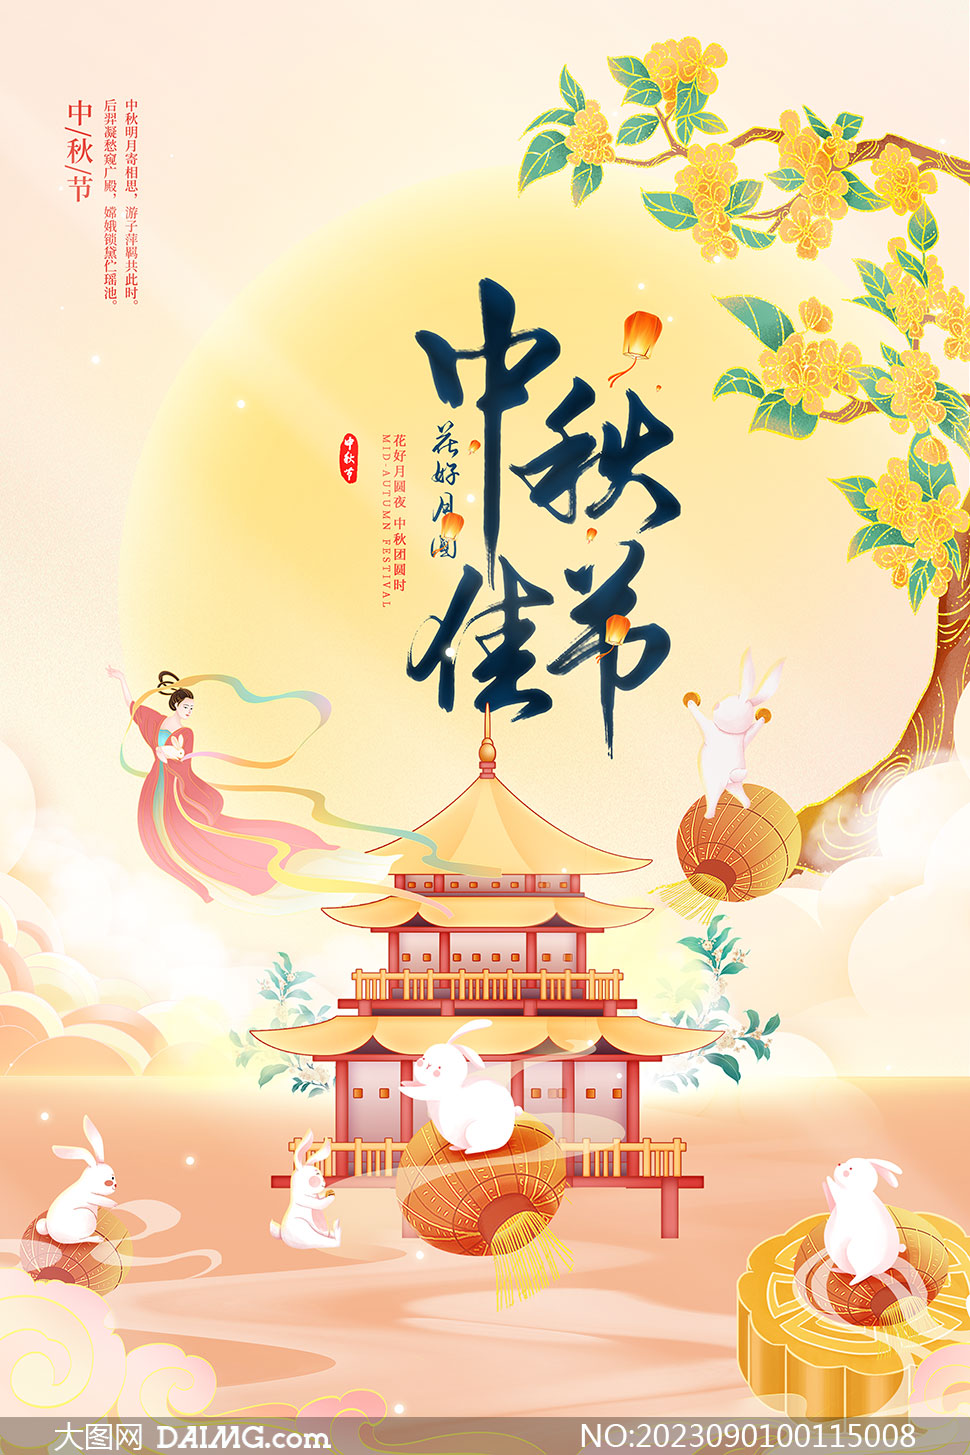 插画风格中秋节宣传海报模板PSD素材